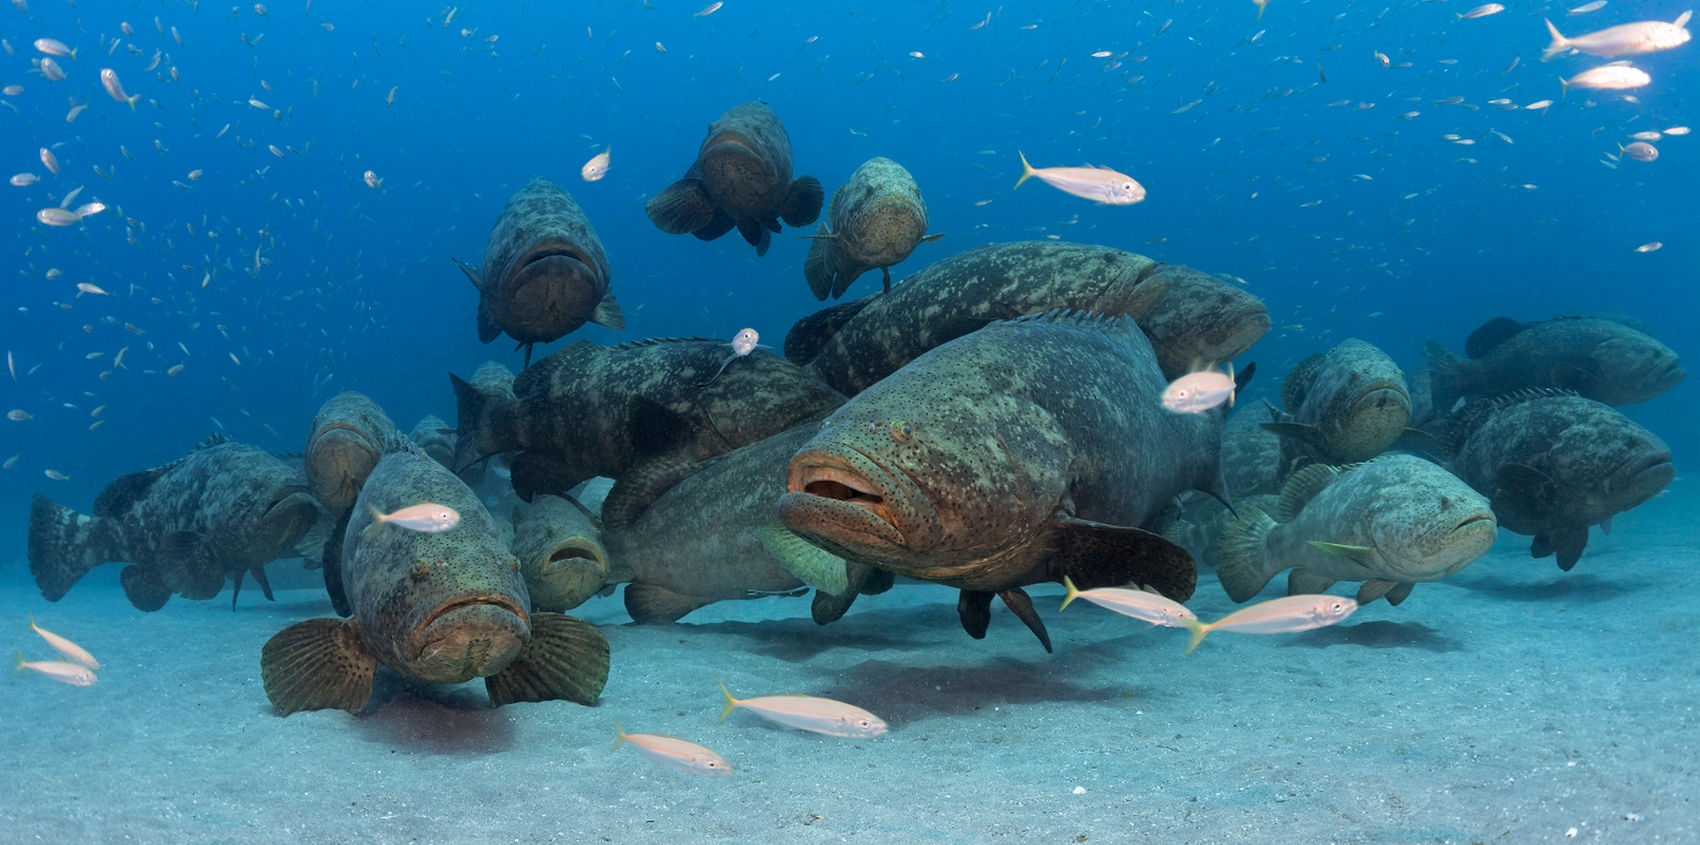 Каменный окунь групер (grouper): виды рыб и условия обитания